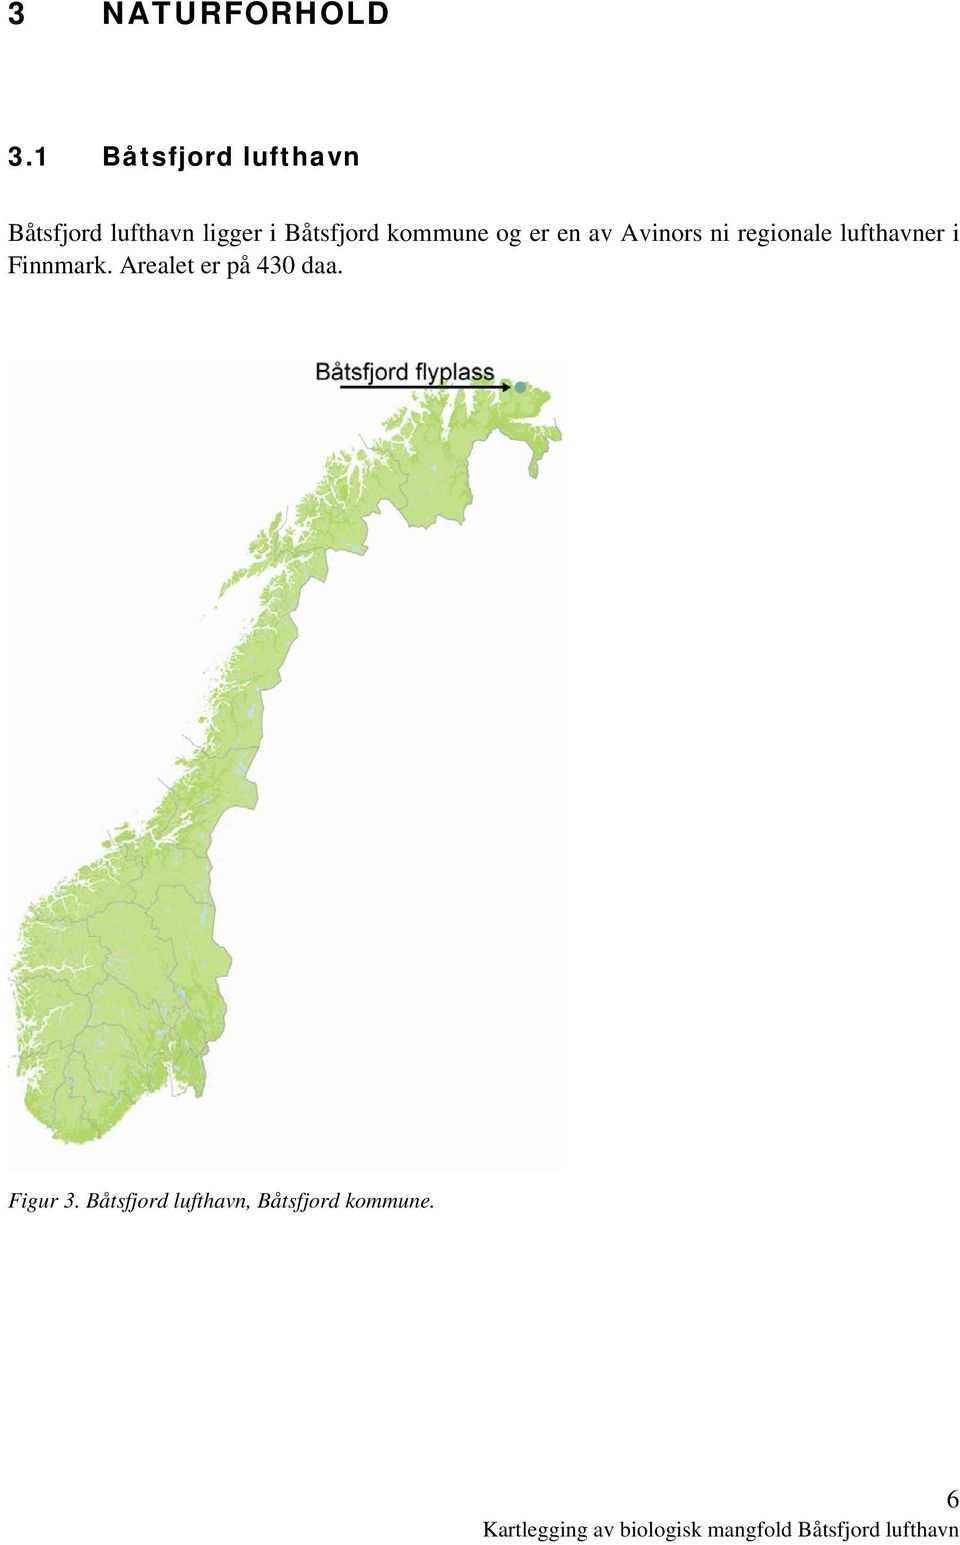 Båtsfjord kommune og er en av Avinors ni regionale